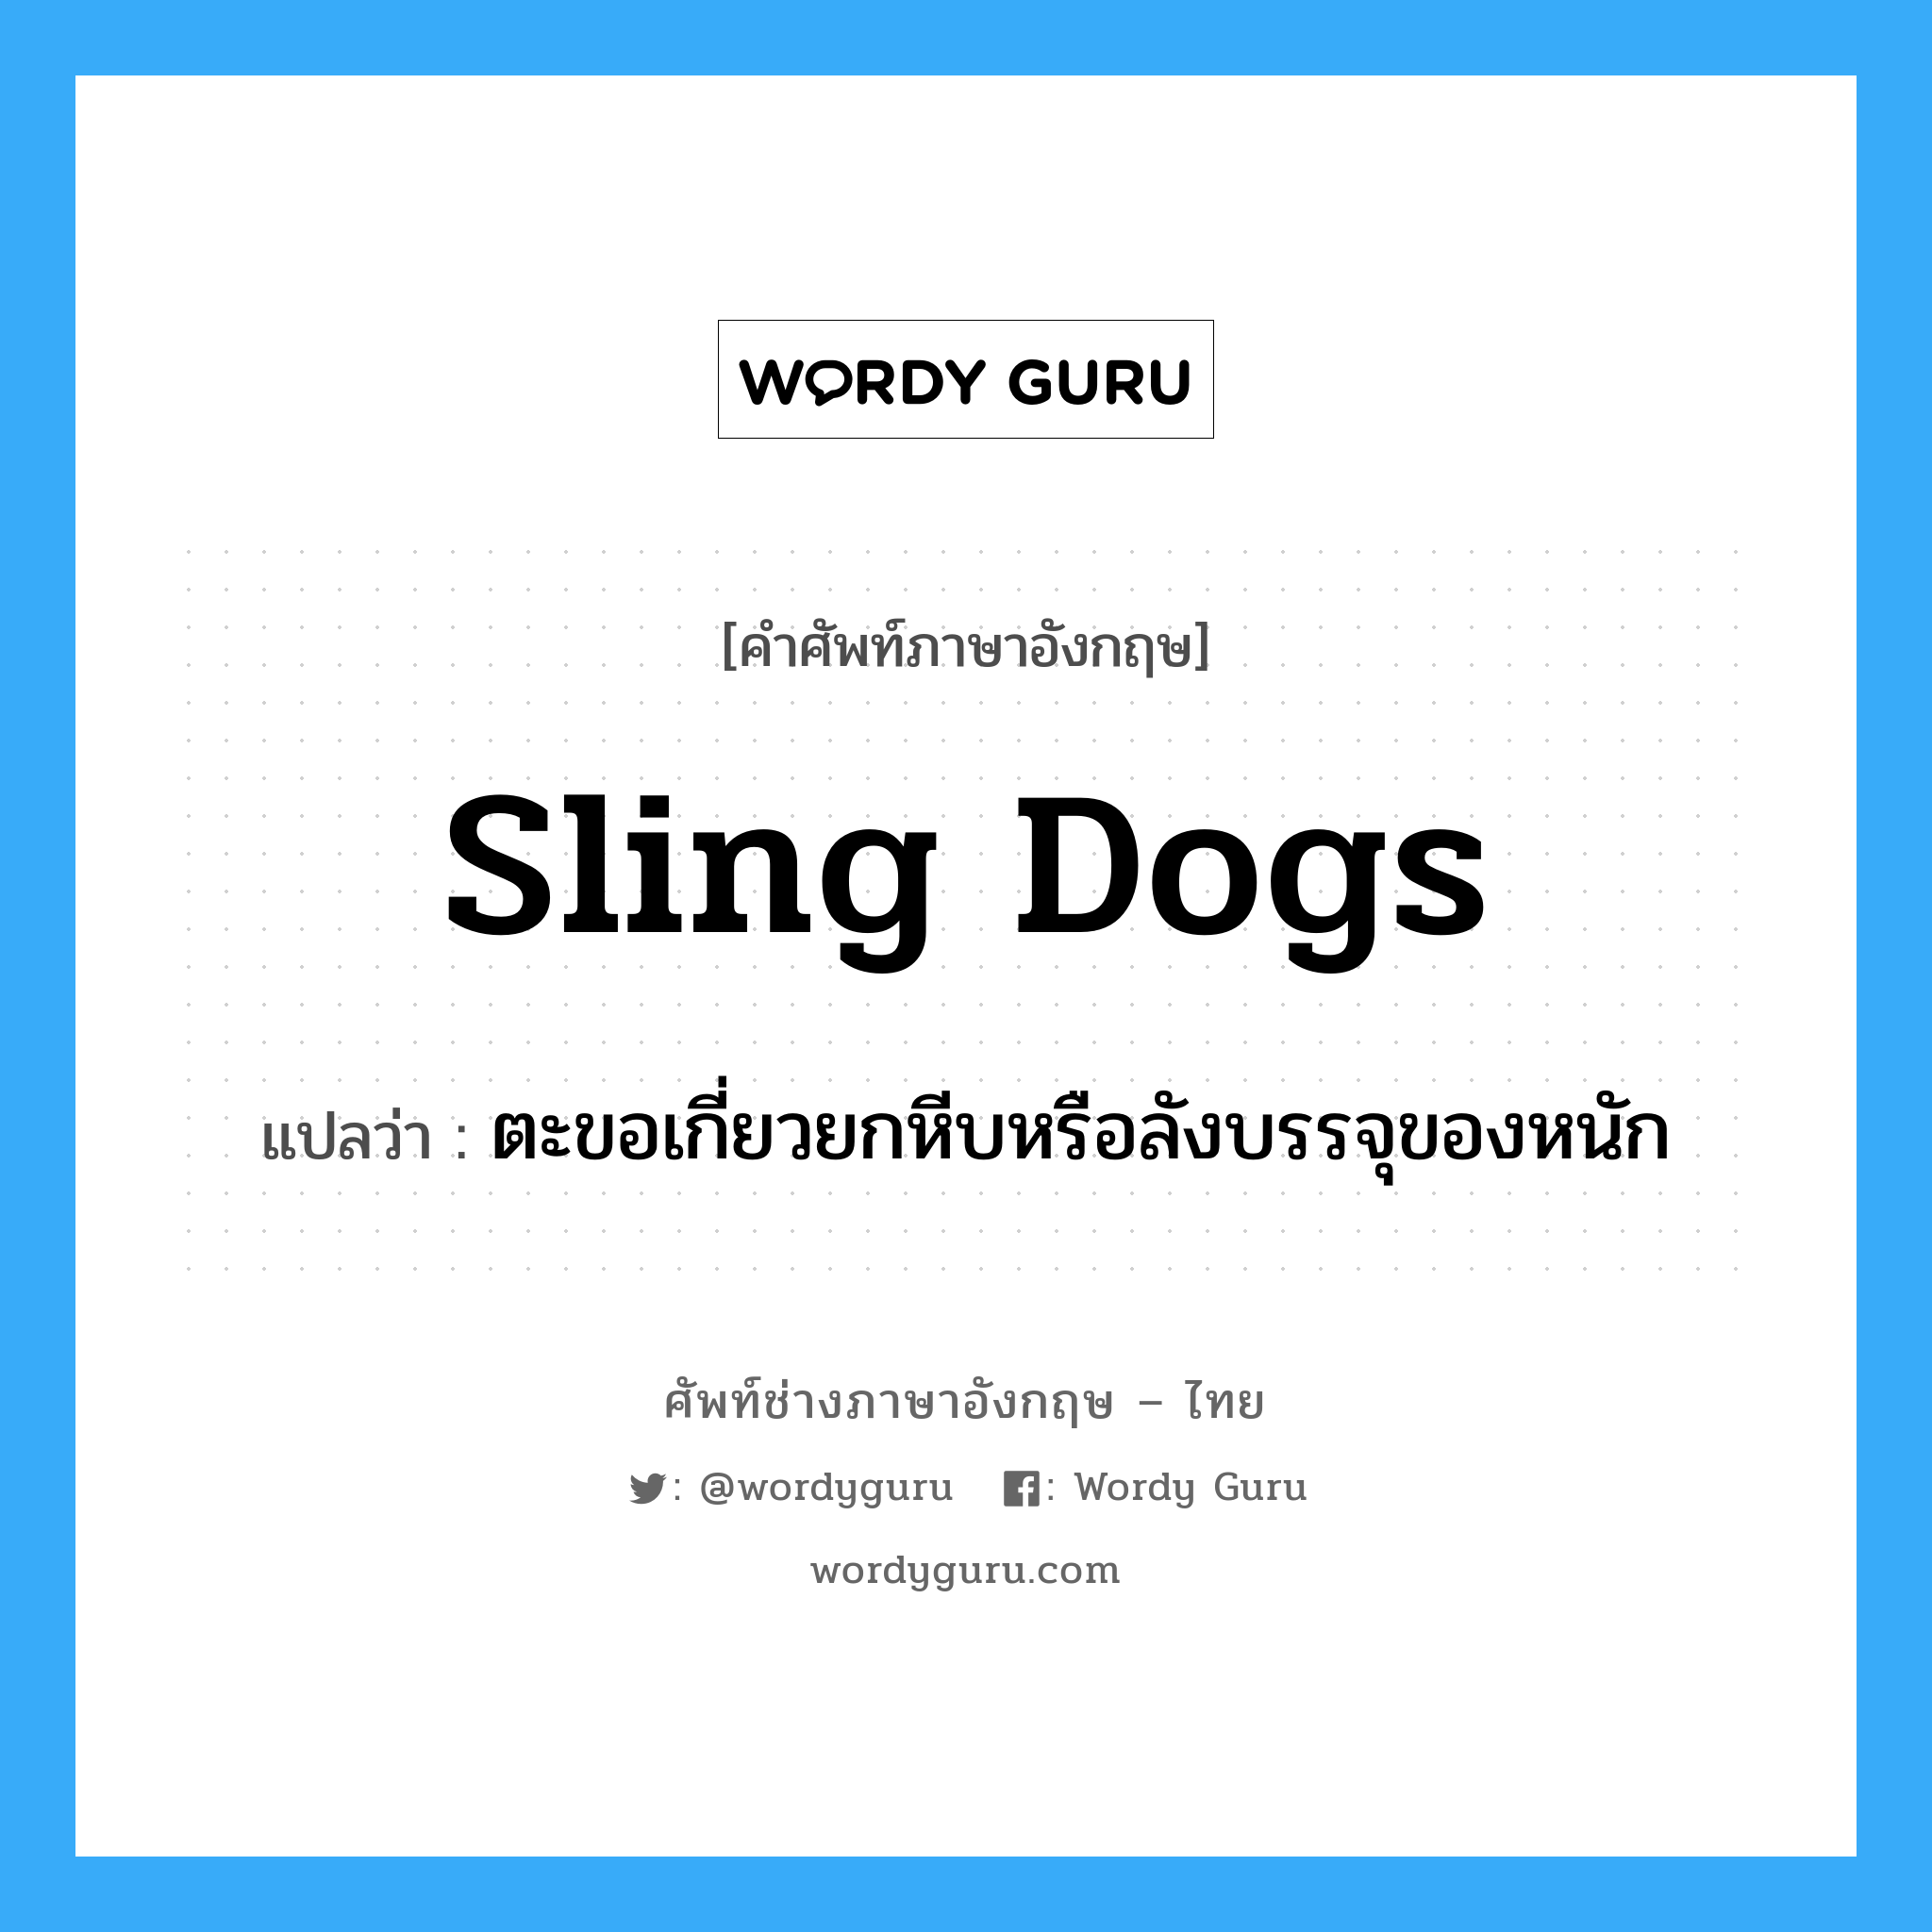 sling-dogs แปลว่า?, คำศัพท์ช่างภาษาอังกฤษ - ไทย sling dogs คำศัพท์ภาษาอังกฤษ sling dogs แปลว่า ตะขอเกี่ยวยกหีบหรือลังบรรจุของหนัก